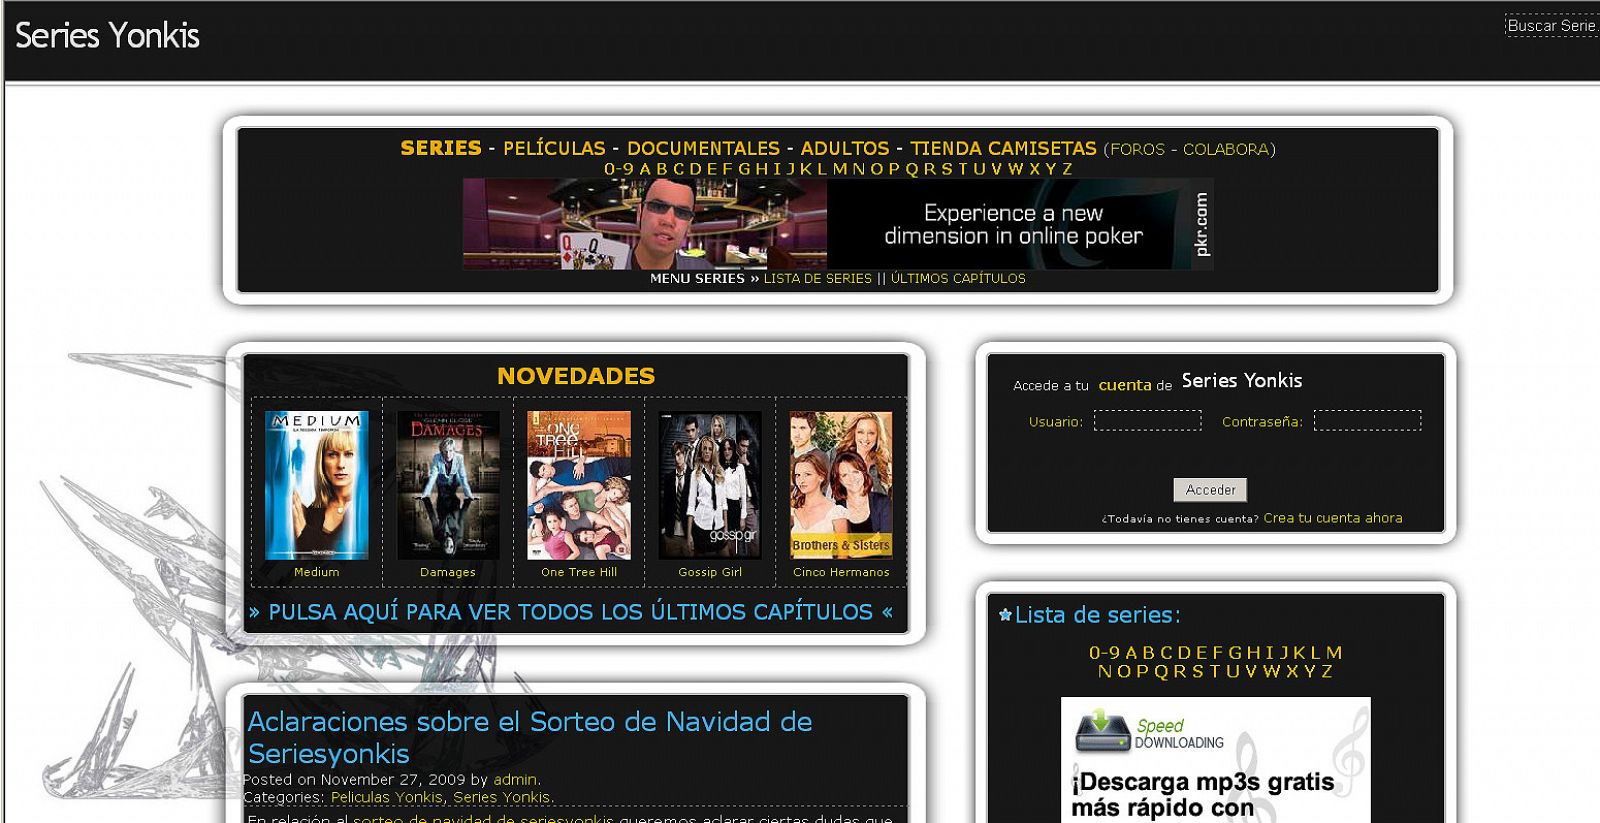 Una página web de descargas de películas y series.